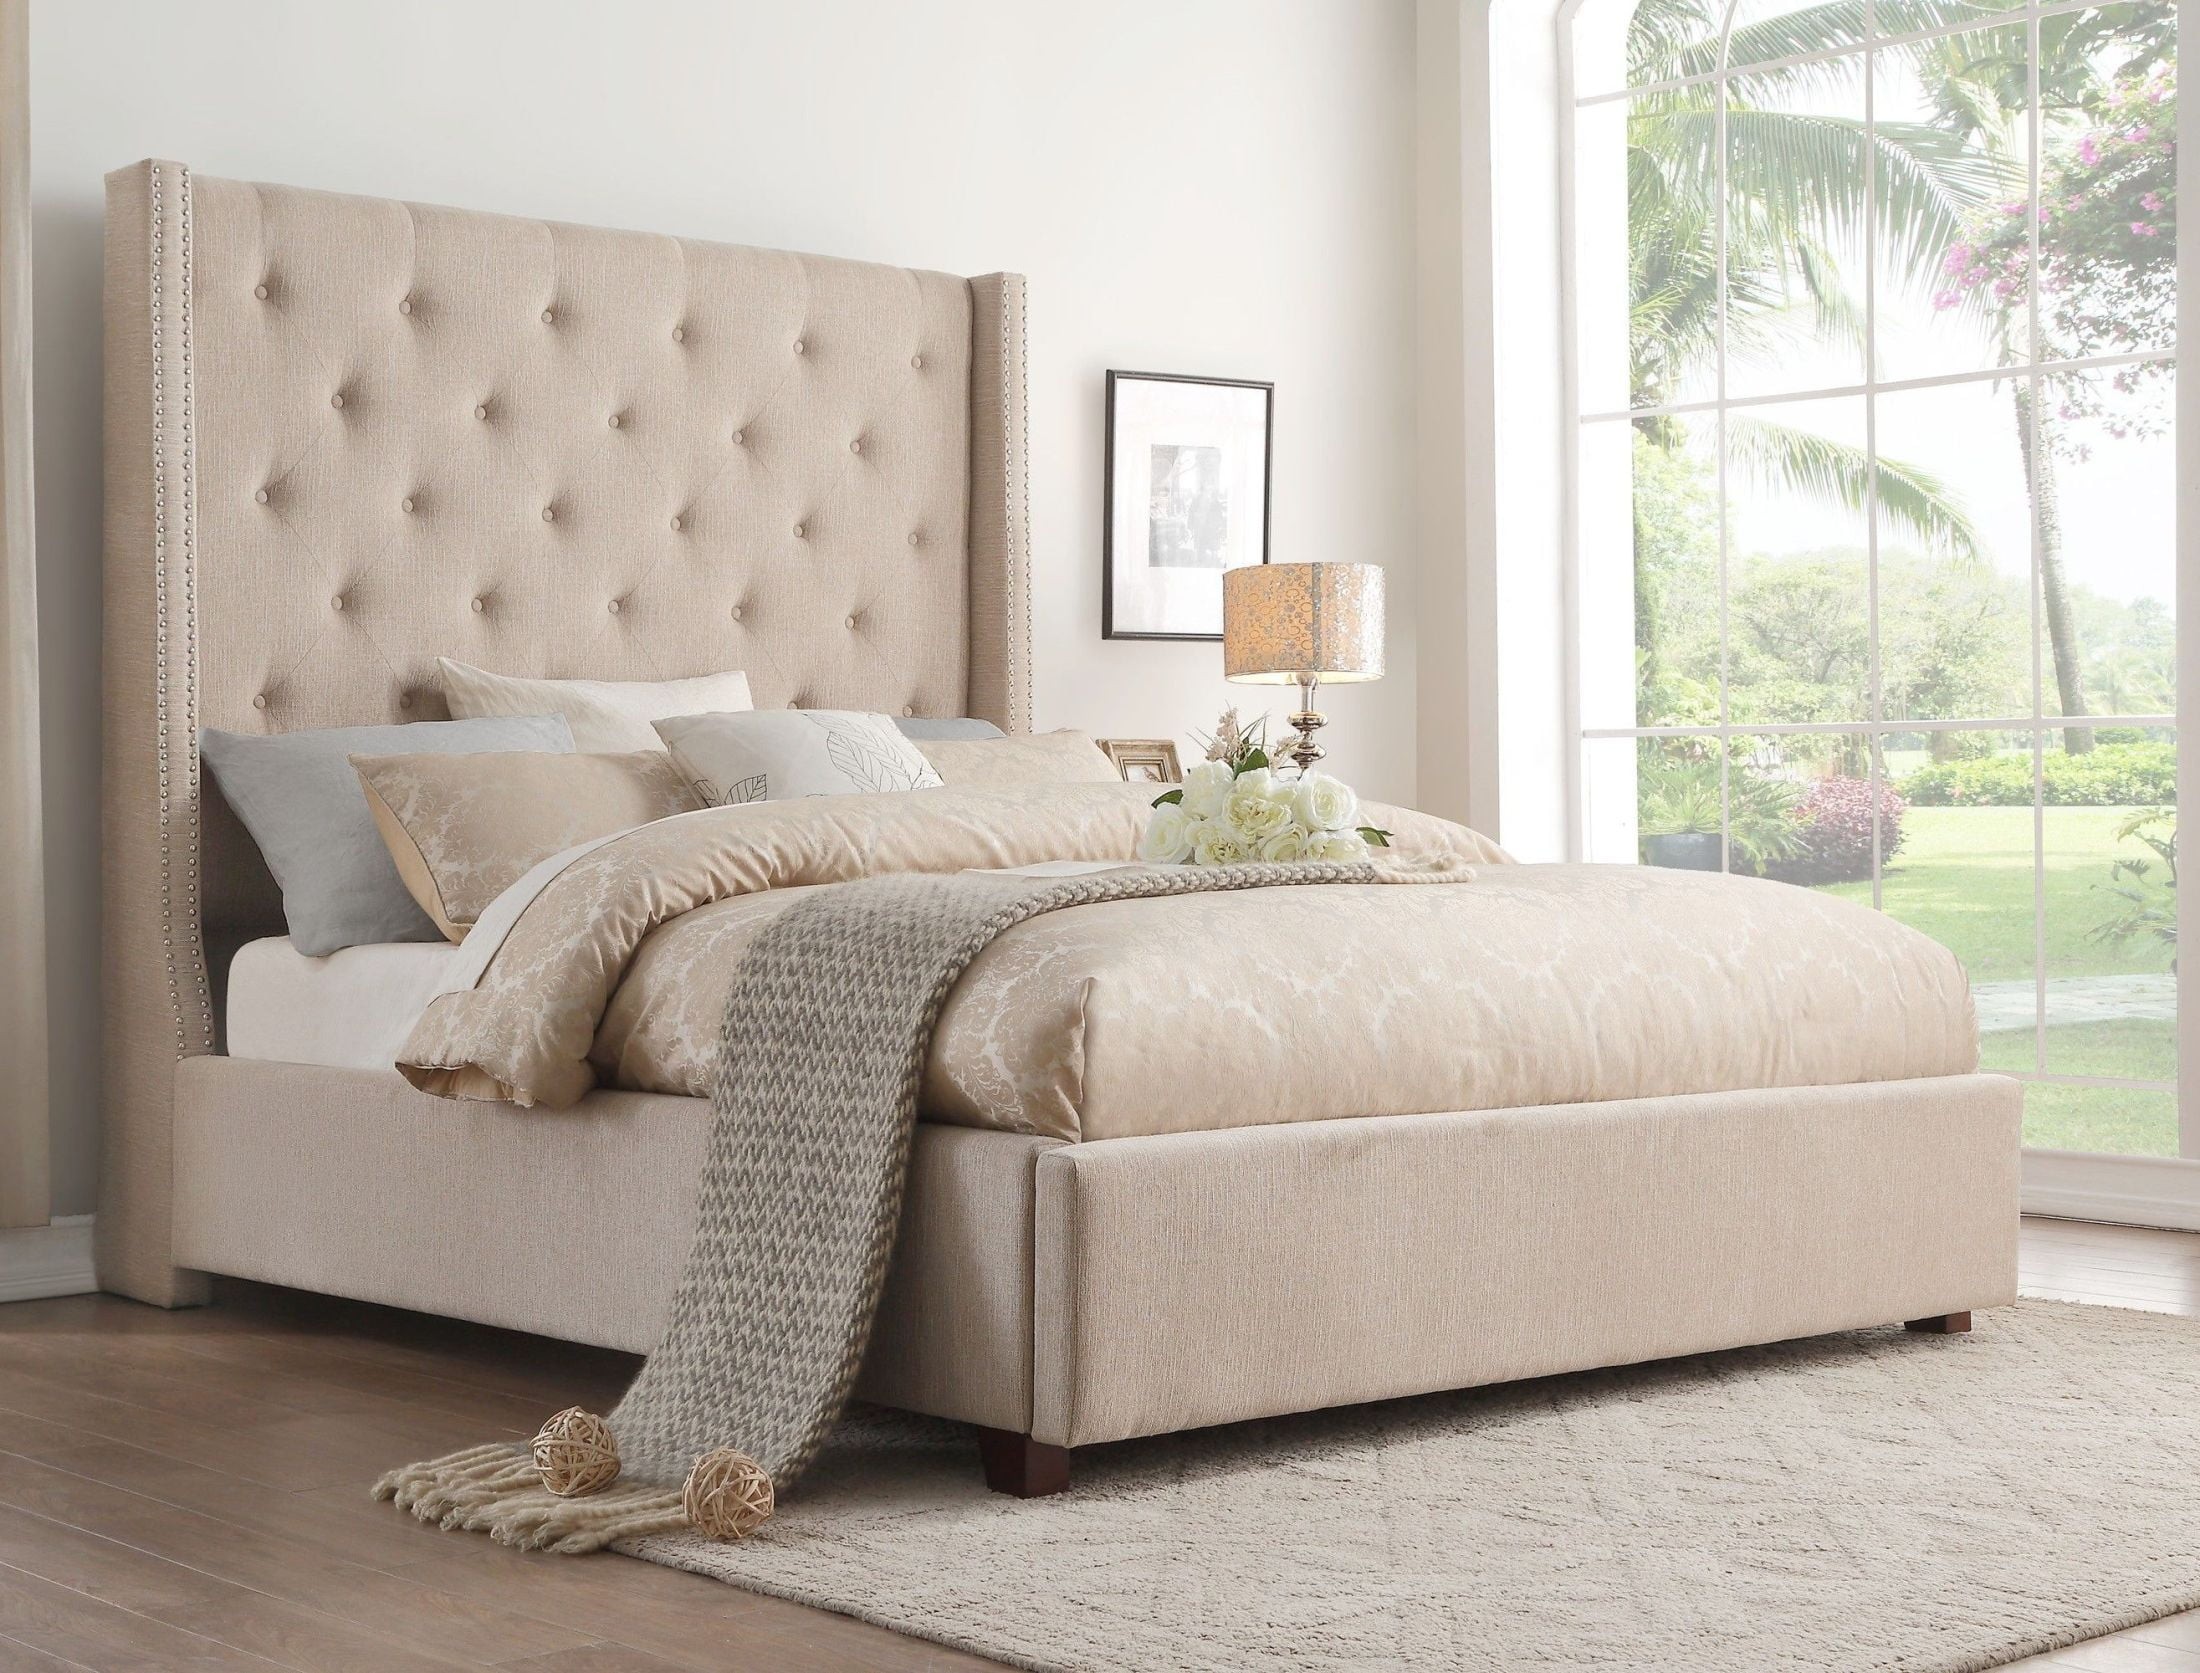 mattress rylan2 light beige upholstered platform bed